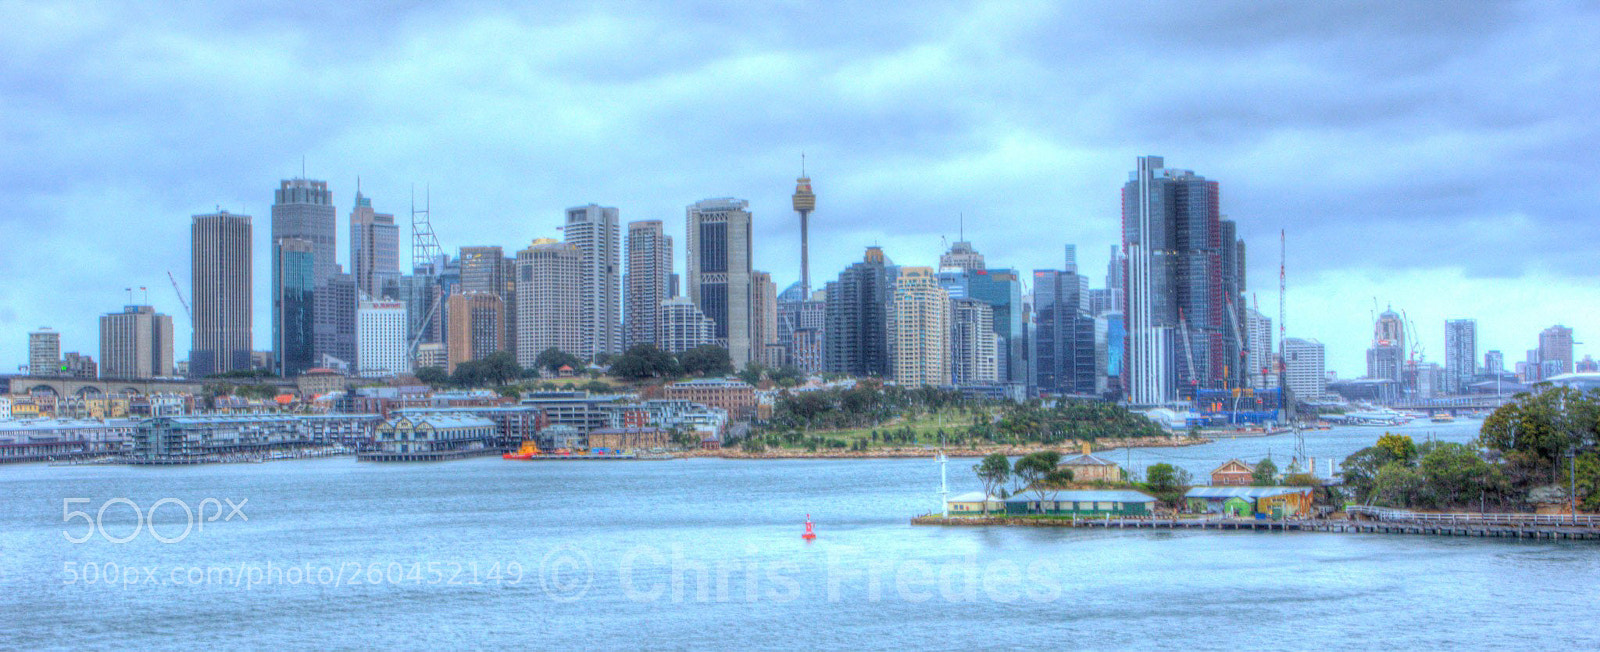 Canon EOS 60D sample photo. Sydney skyline hdr photography